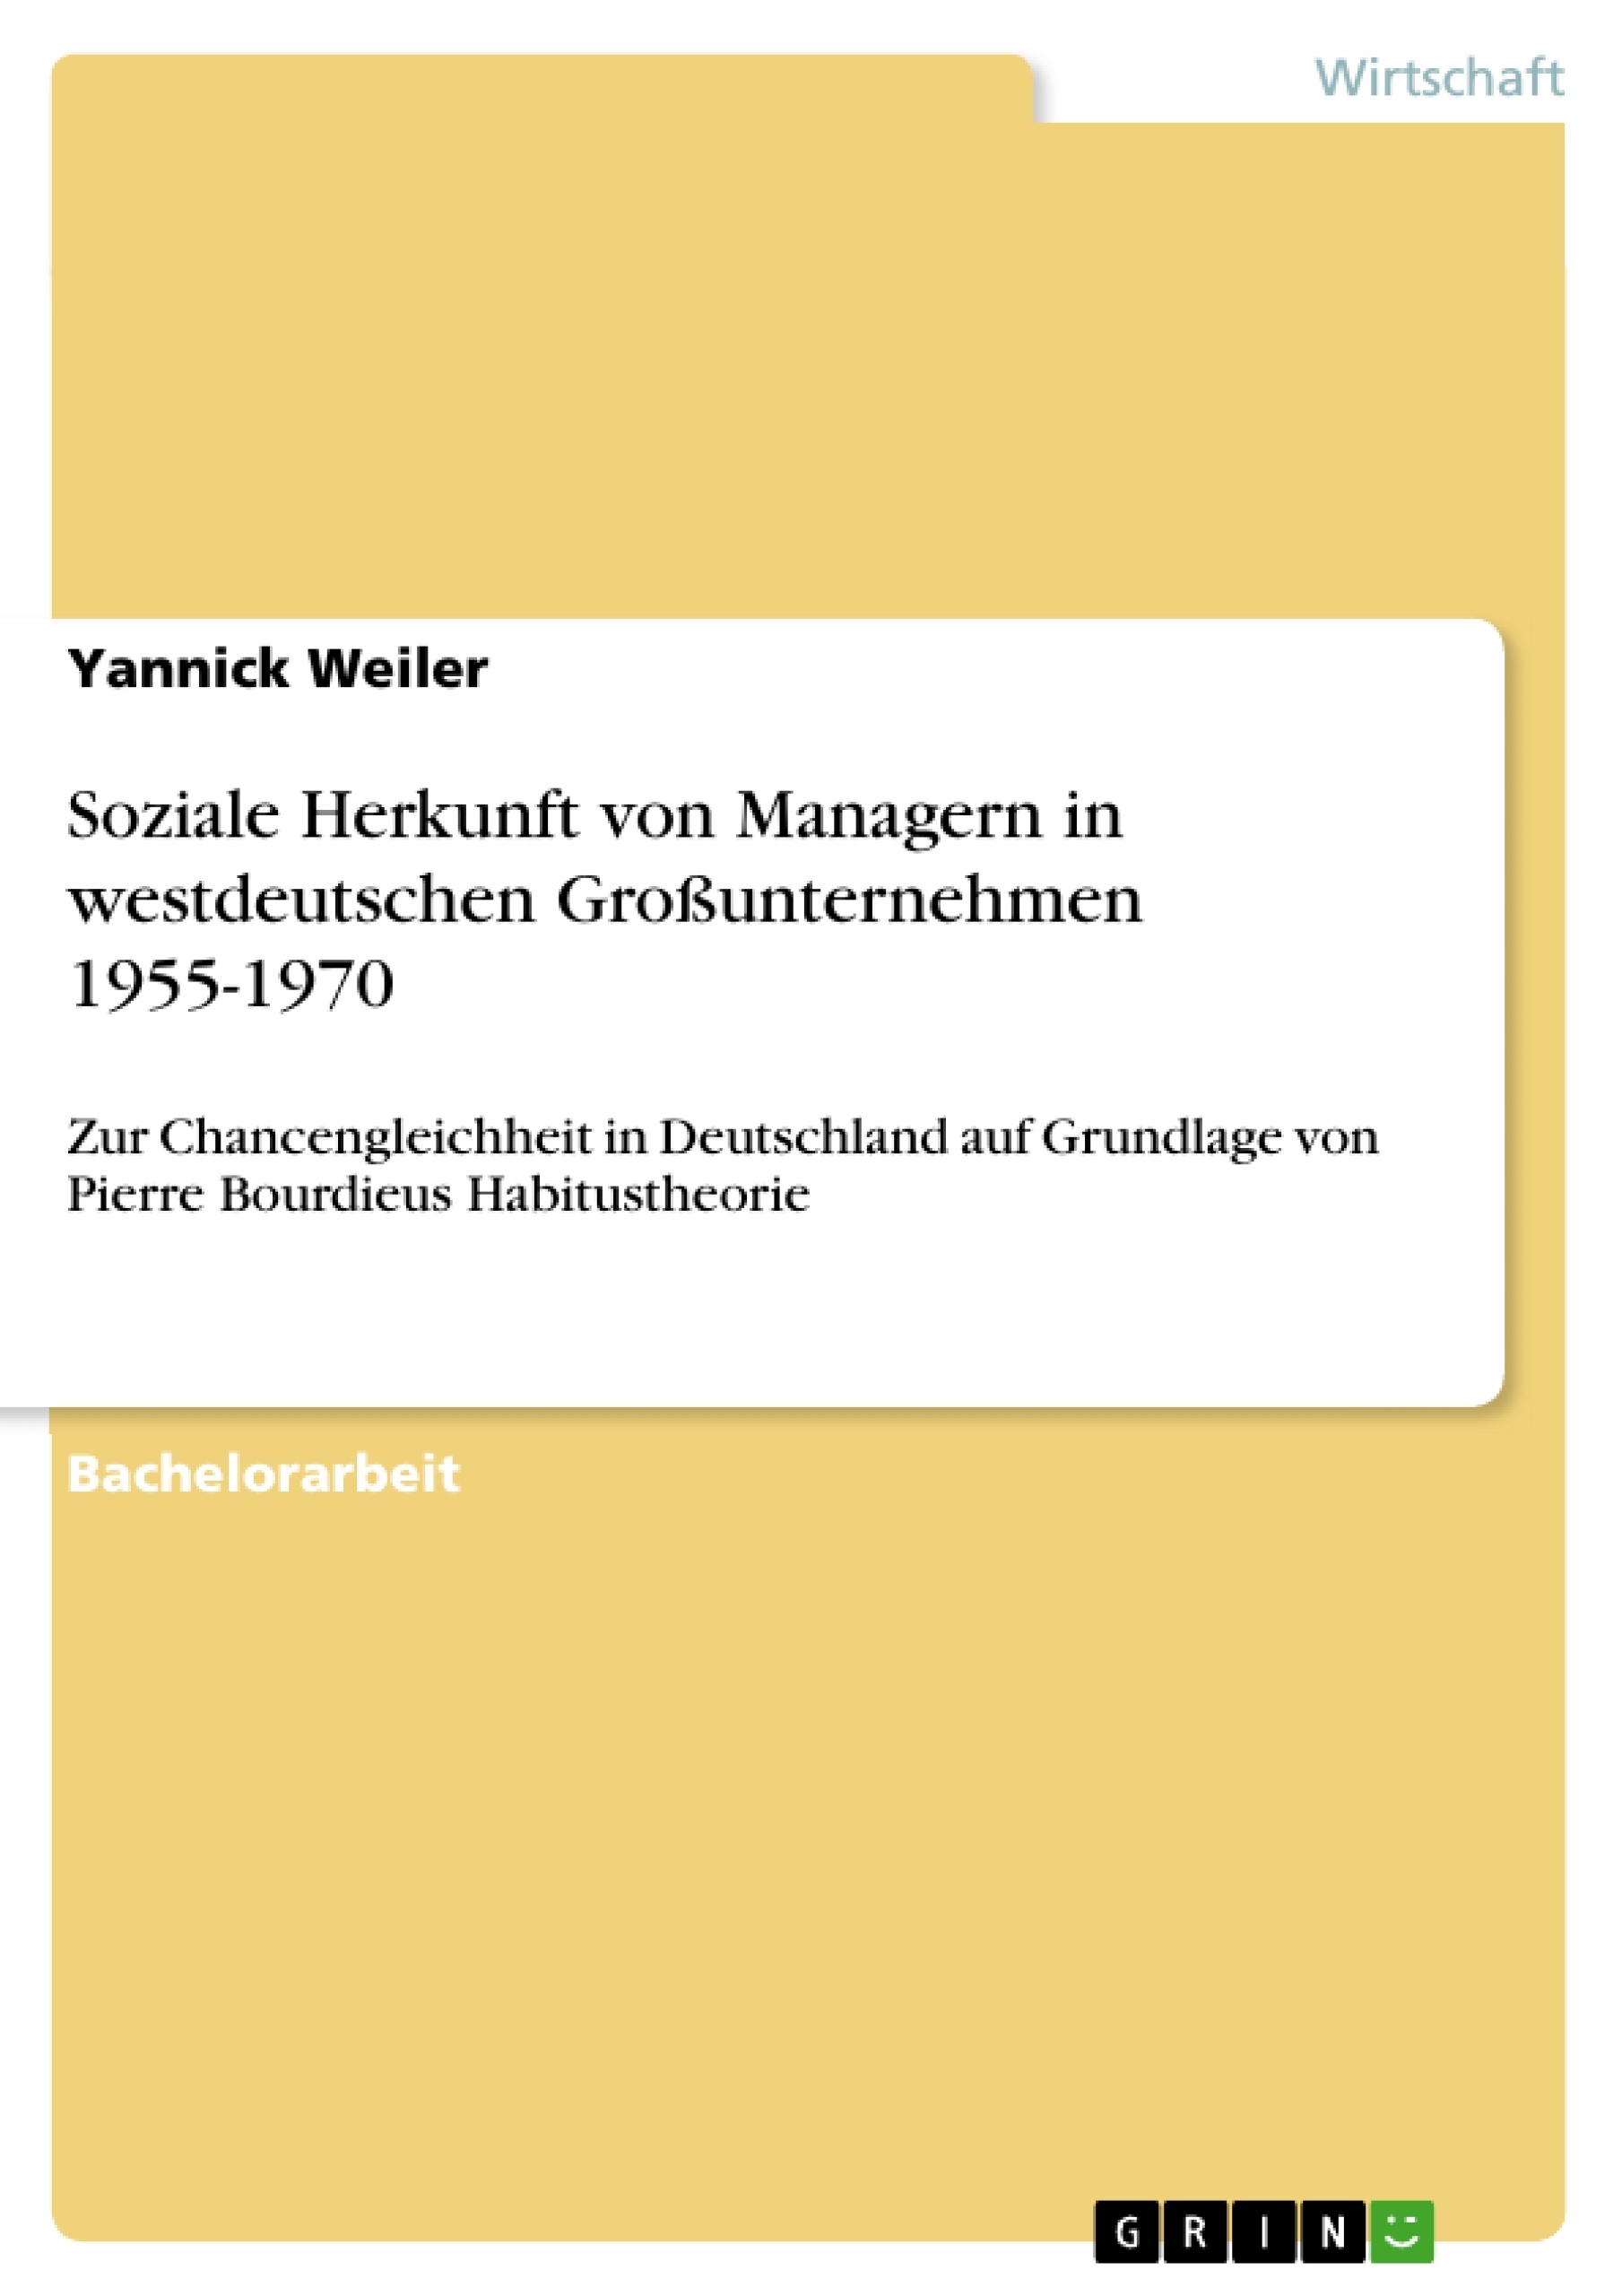 Titel: Soziale Herkunft von Managern in westdeutschen Großunternehmen 1955-1970